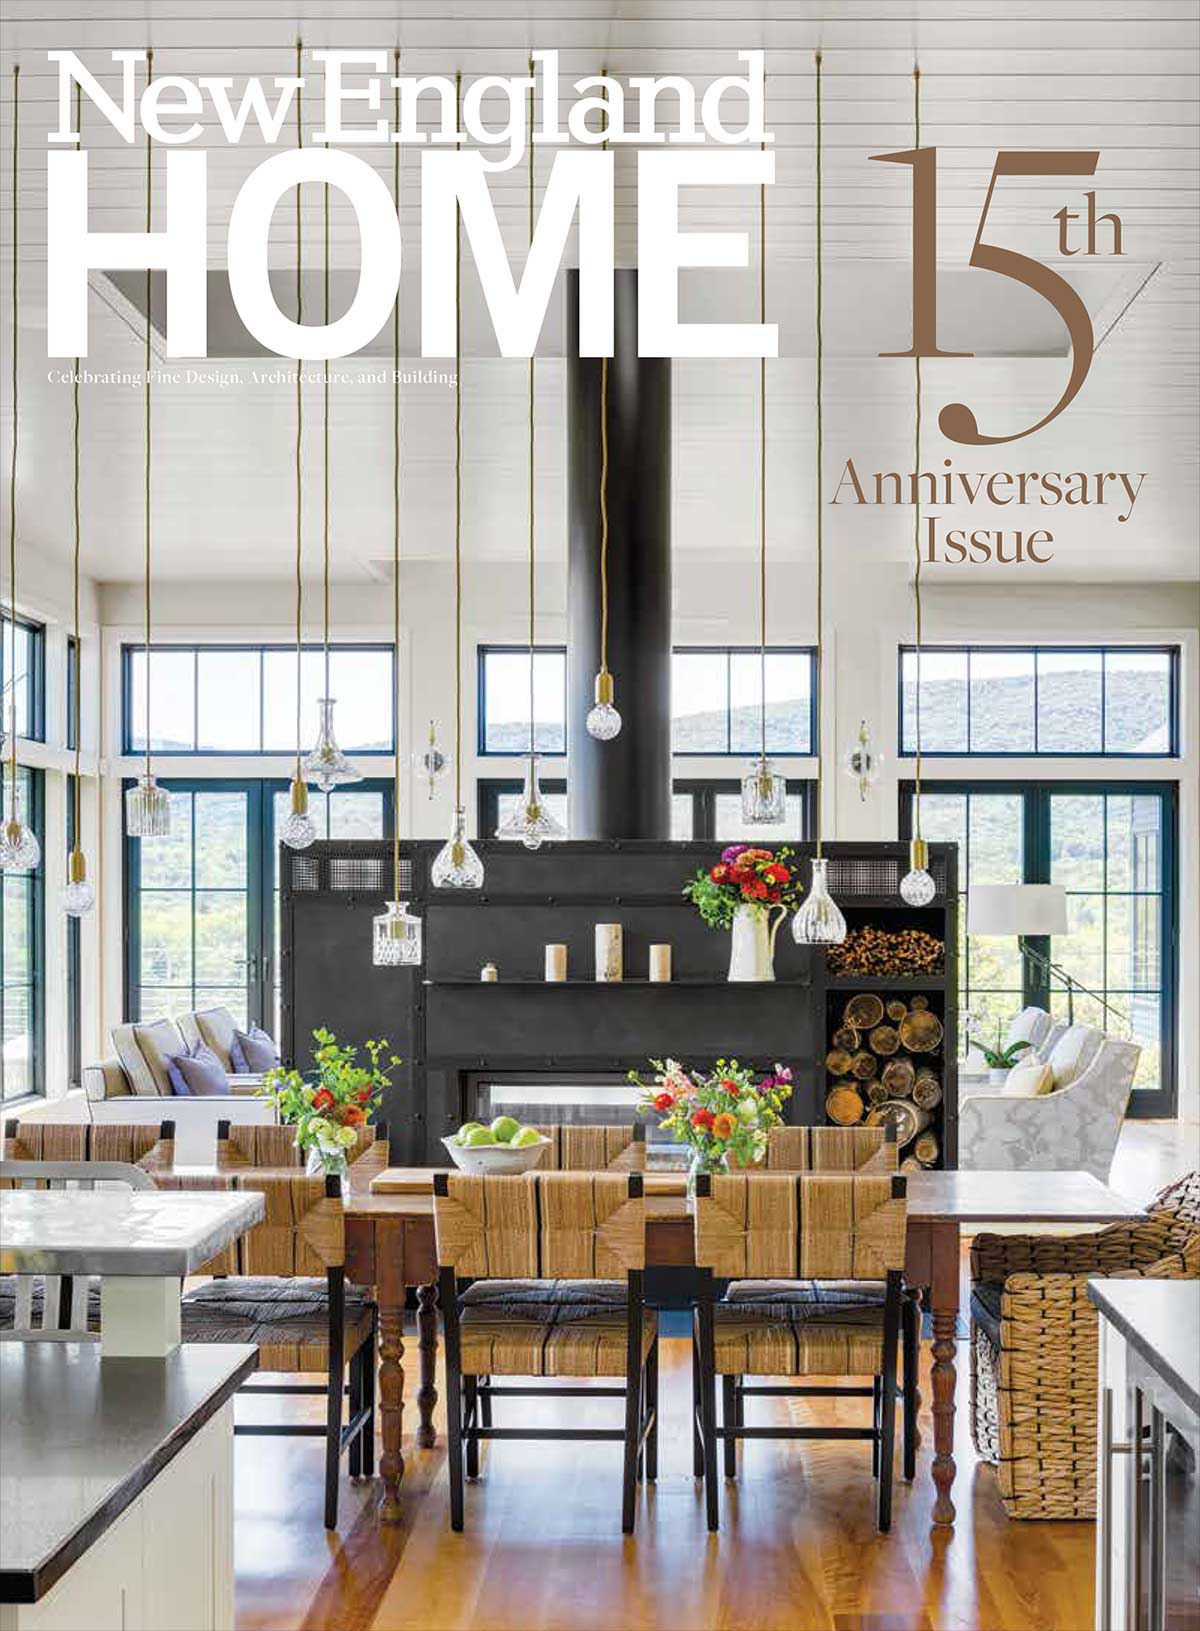 Destaque em “Kitchens We Love” – New England Home Magazine